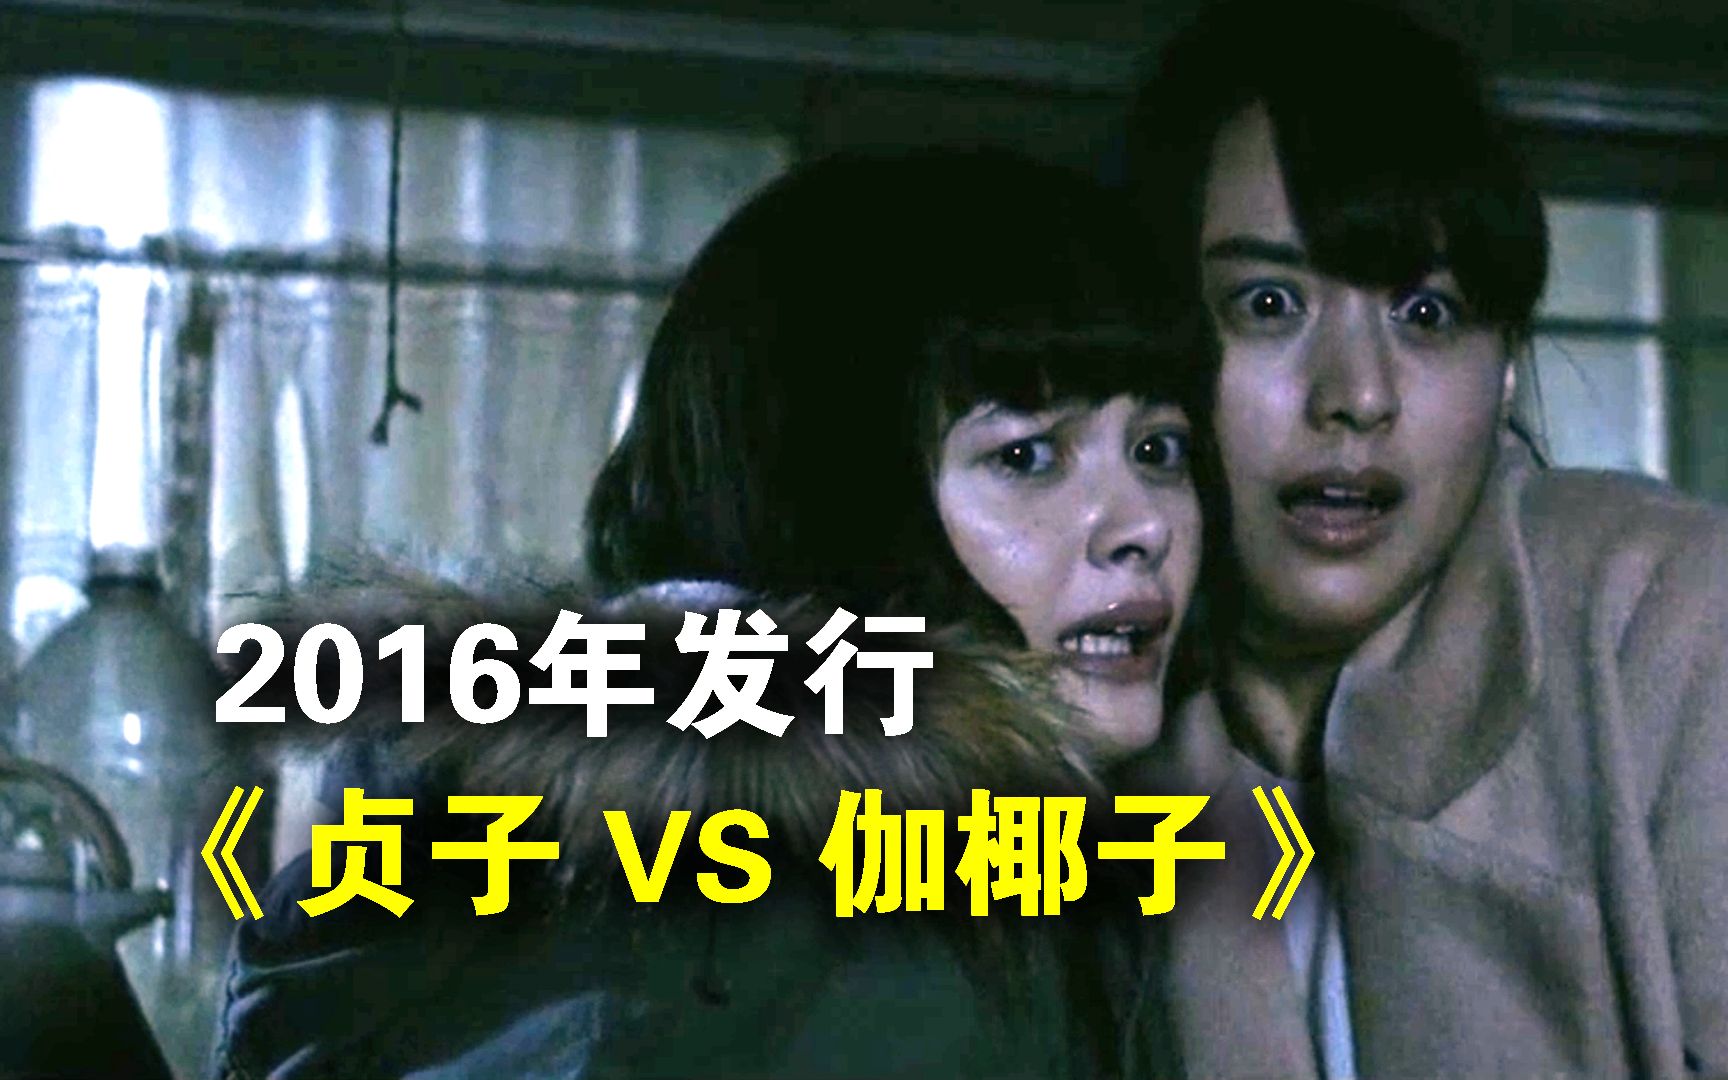 《贞子 vs. 伽椰子》 Sadako vs. Kayako -6park.com